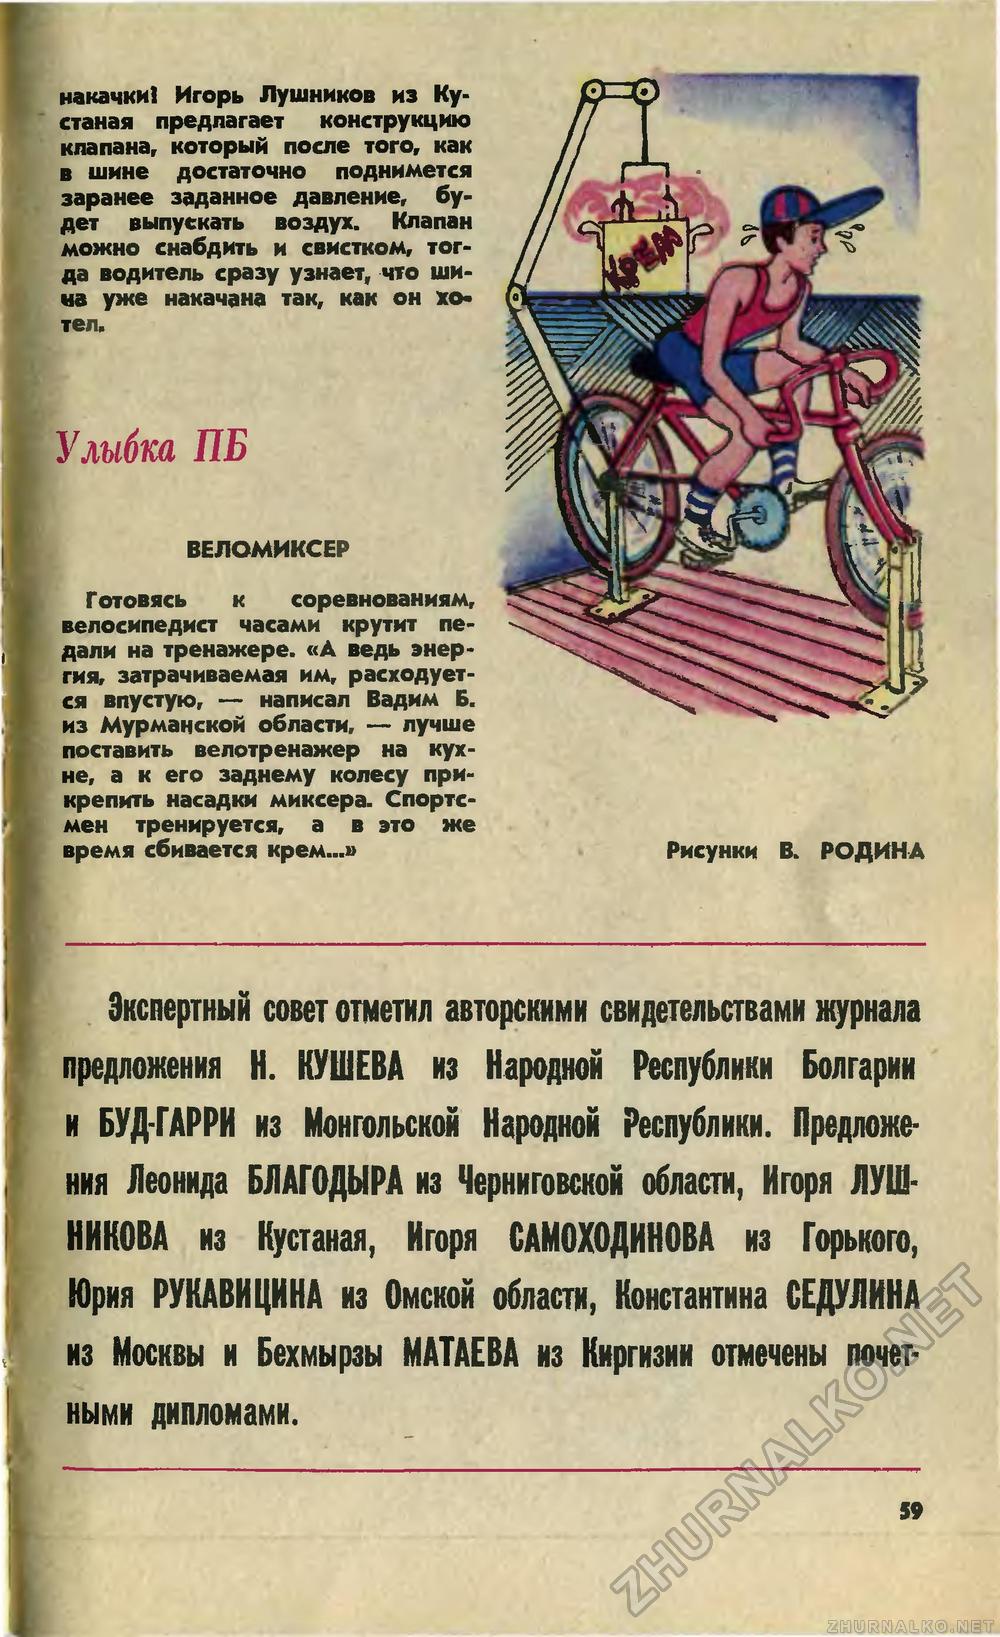   1982-11,  62